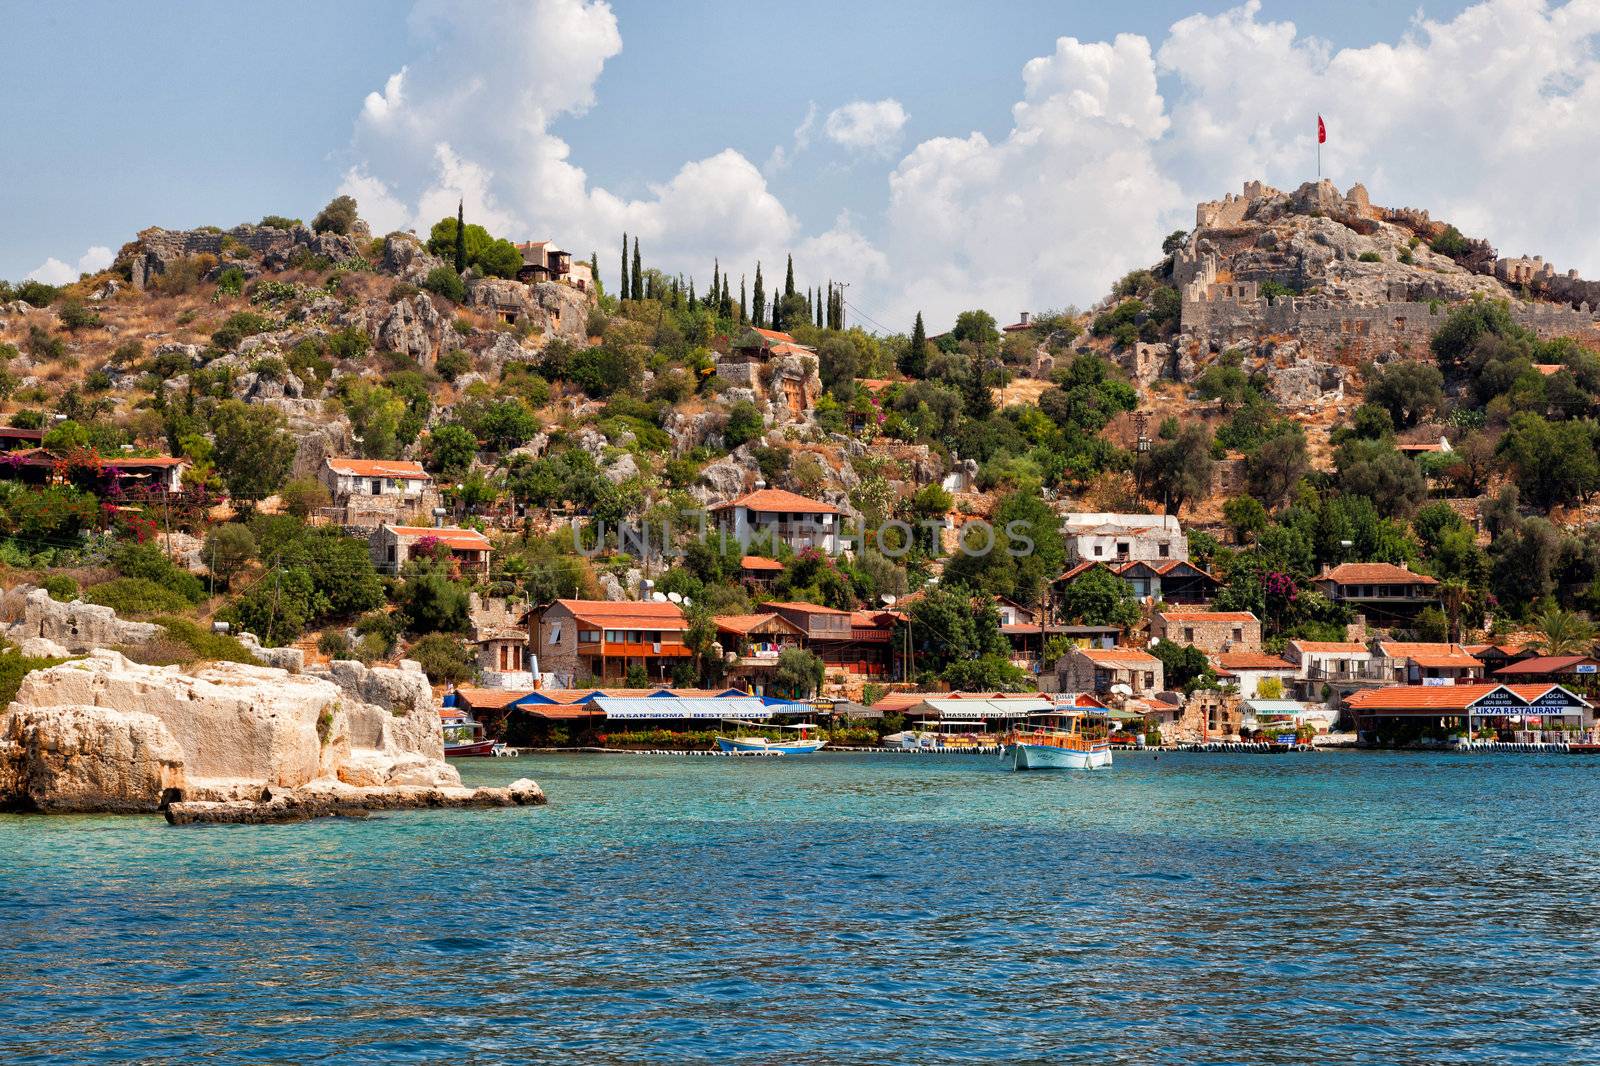 Kalekoy (Simena) village in Antalya, Turkey